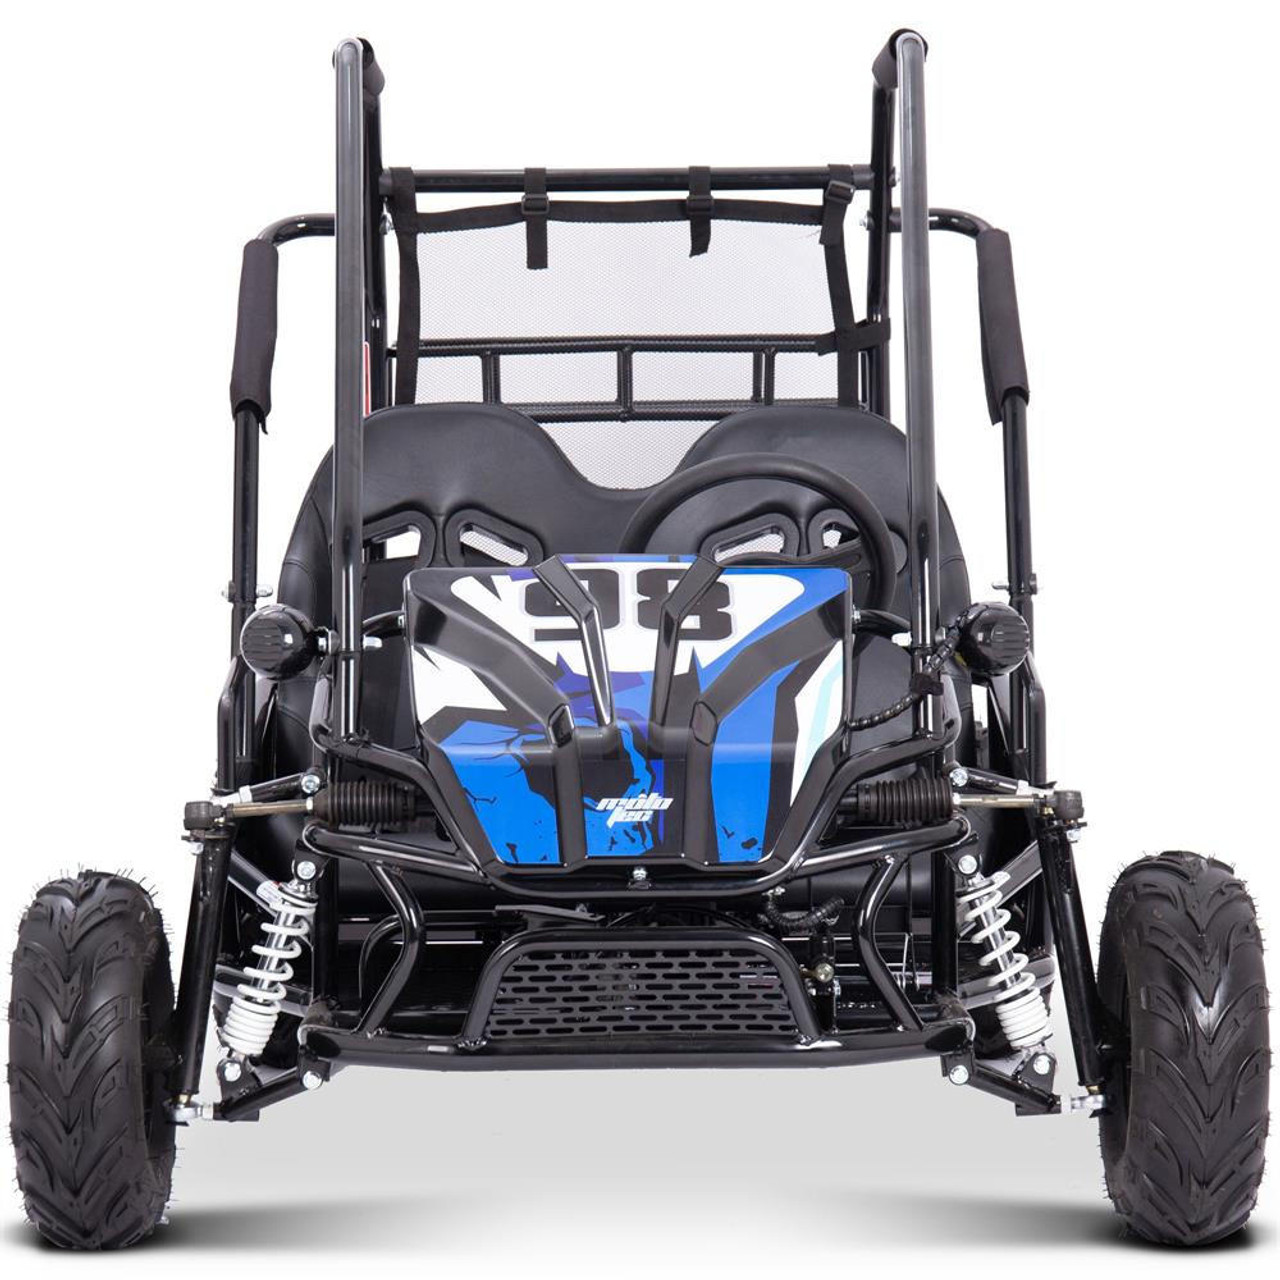  Mototec Mud Monster Xl 72v 2000w Electric Go Kart Full Suspension Blue 